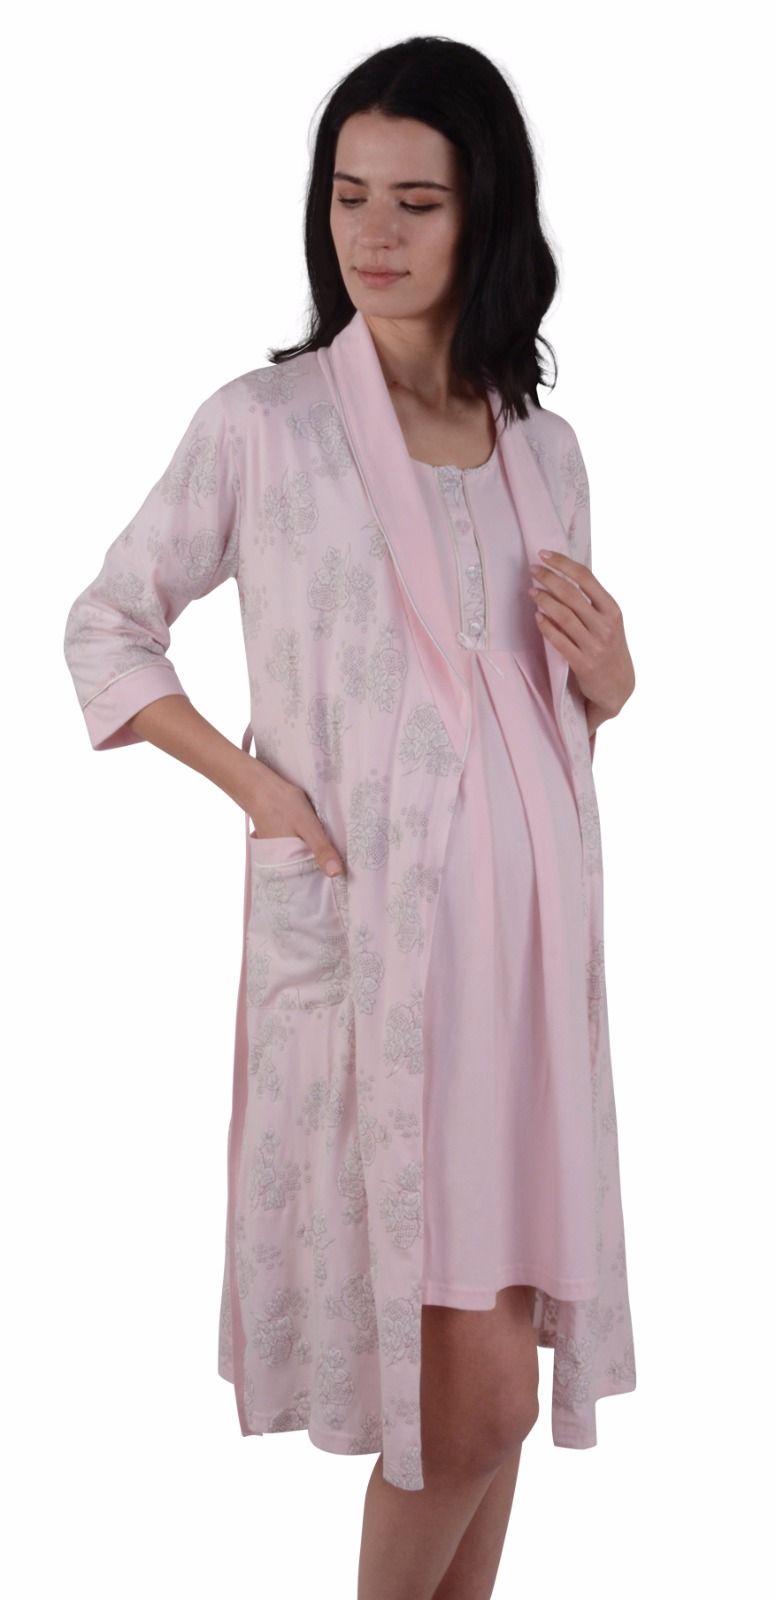 Сорочки и халат для женщин ( беременных )  07281